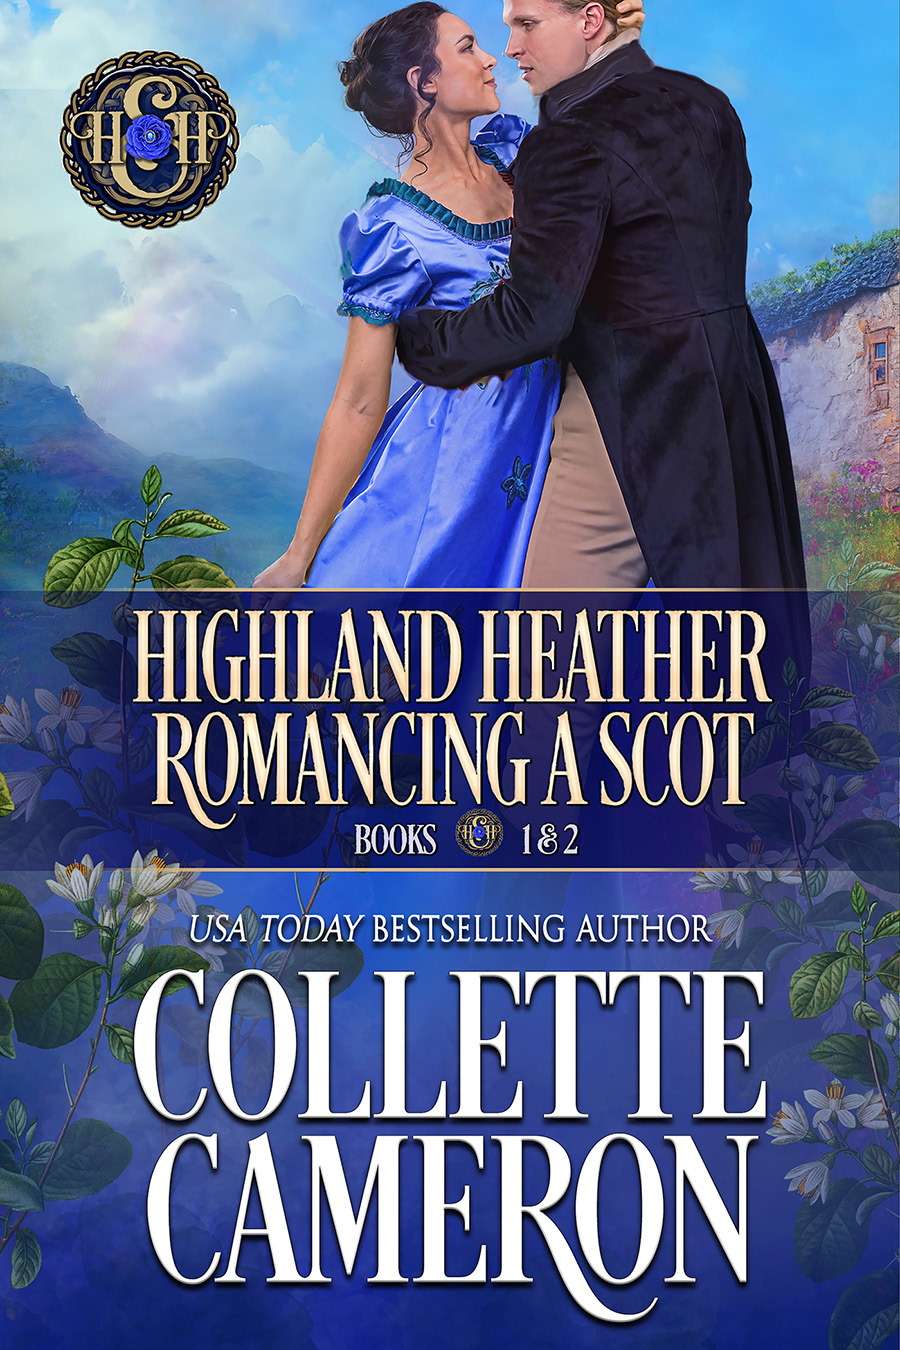 Collette's Historical Romances 4